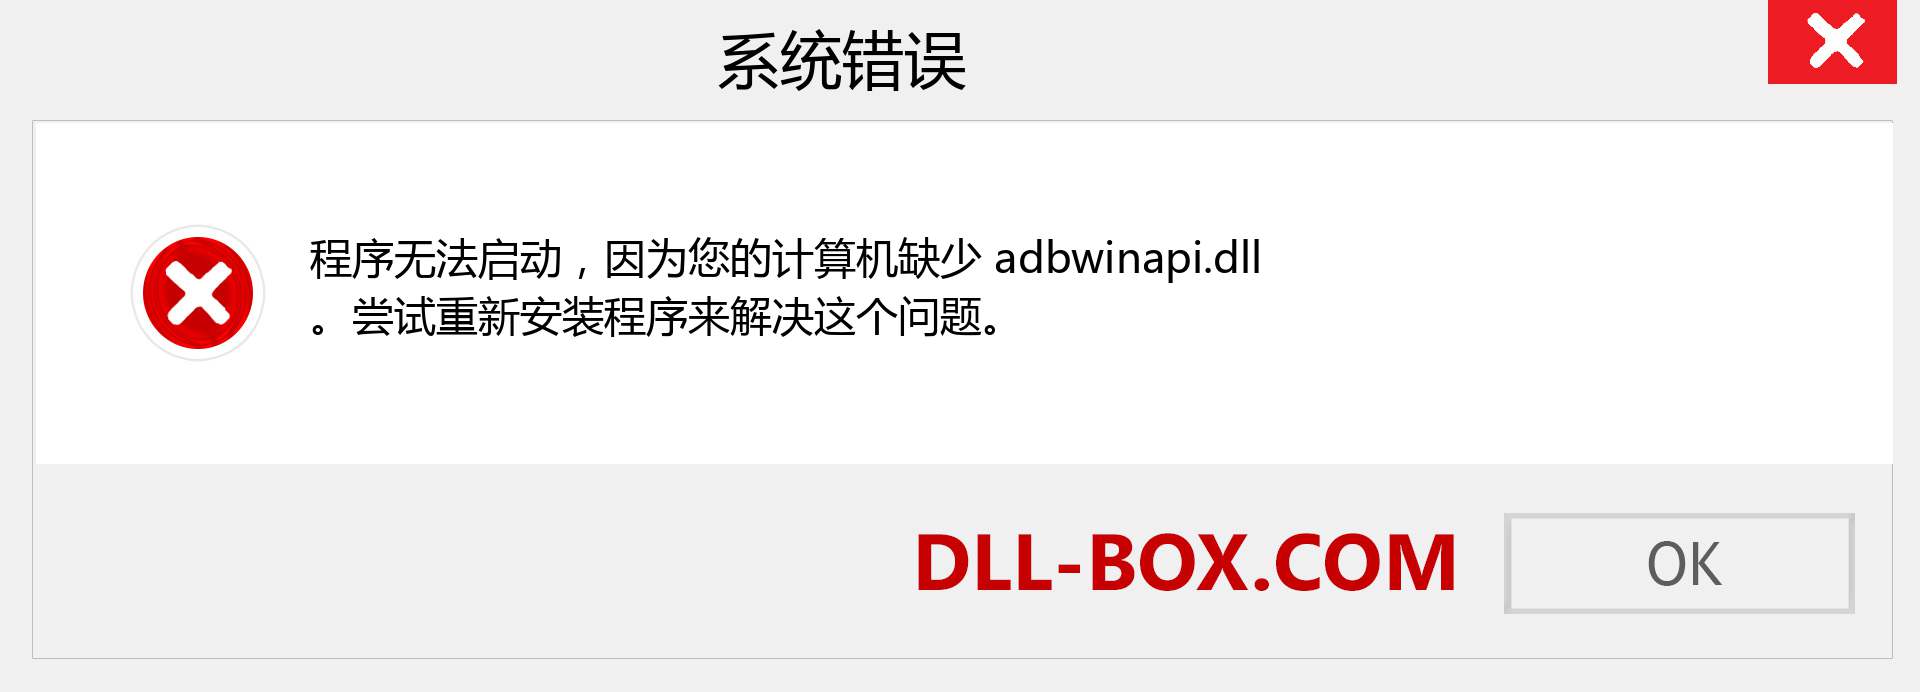 adbwinapi.dll 文件丢失？。 适用于 Windows 7、8、10 的下载 - 修复 Windows、照片、图像上的 adbwinapi dll 丢失错误